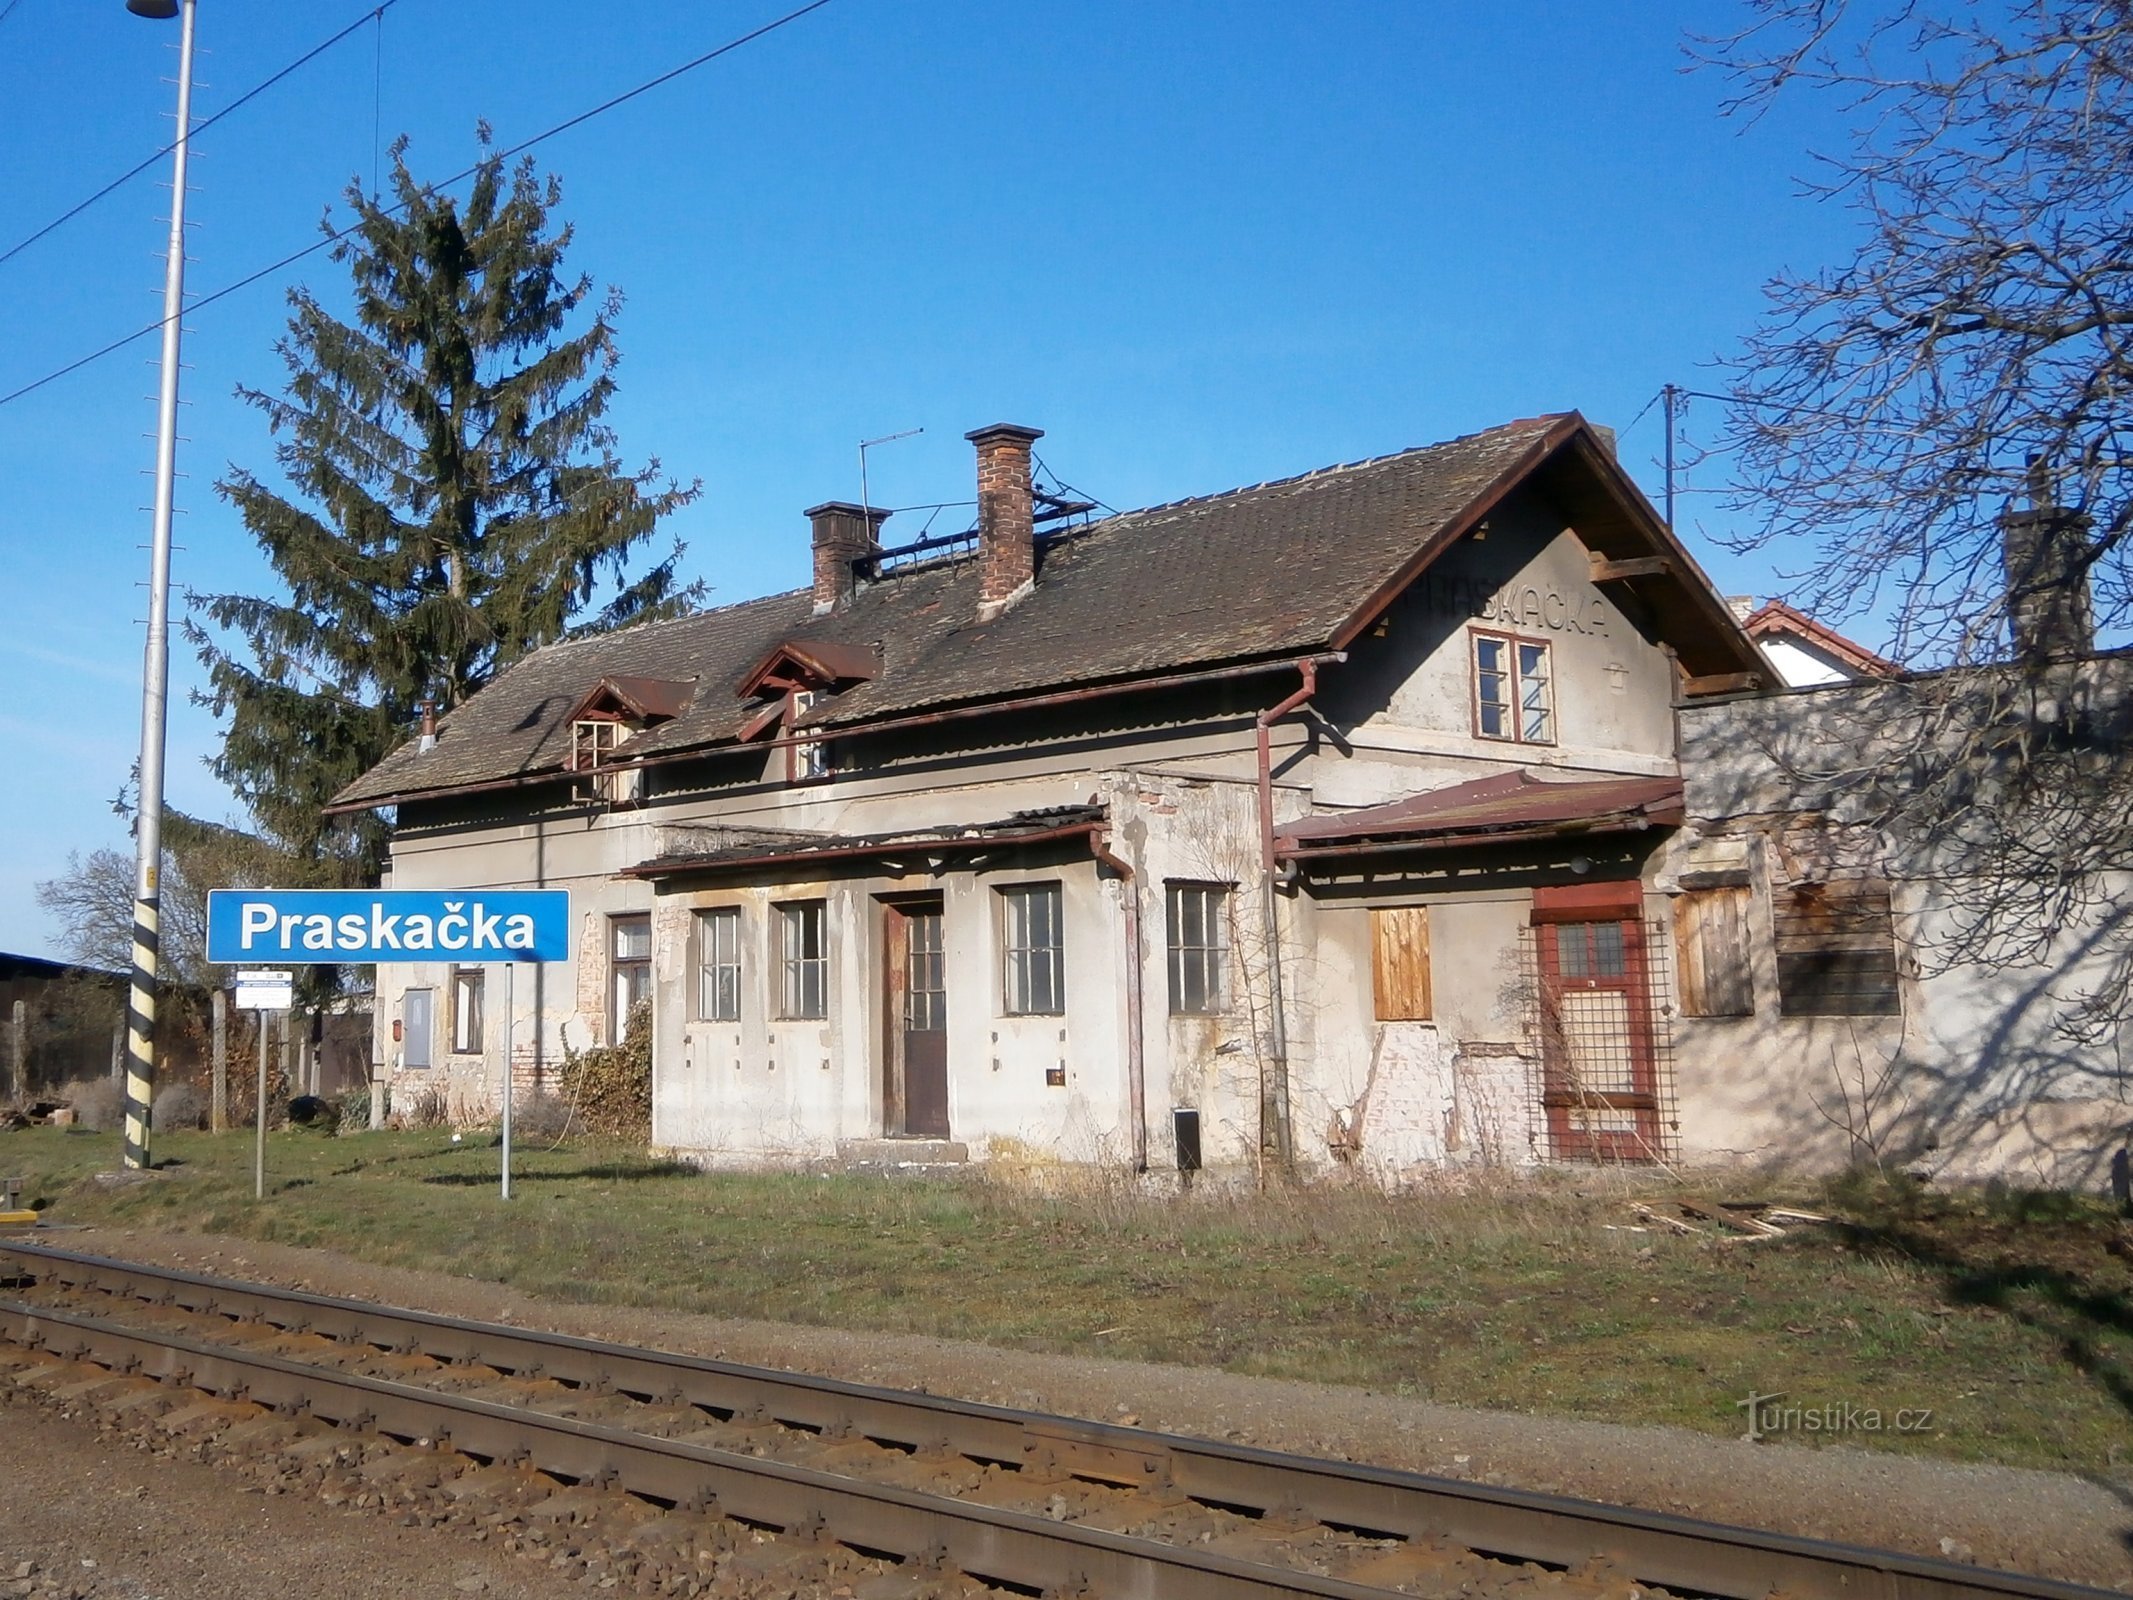 Staré nádraží v Praskačce